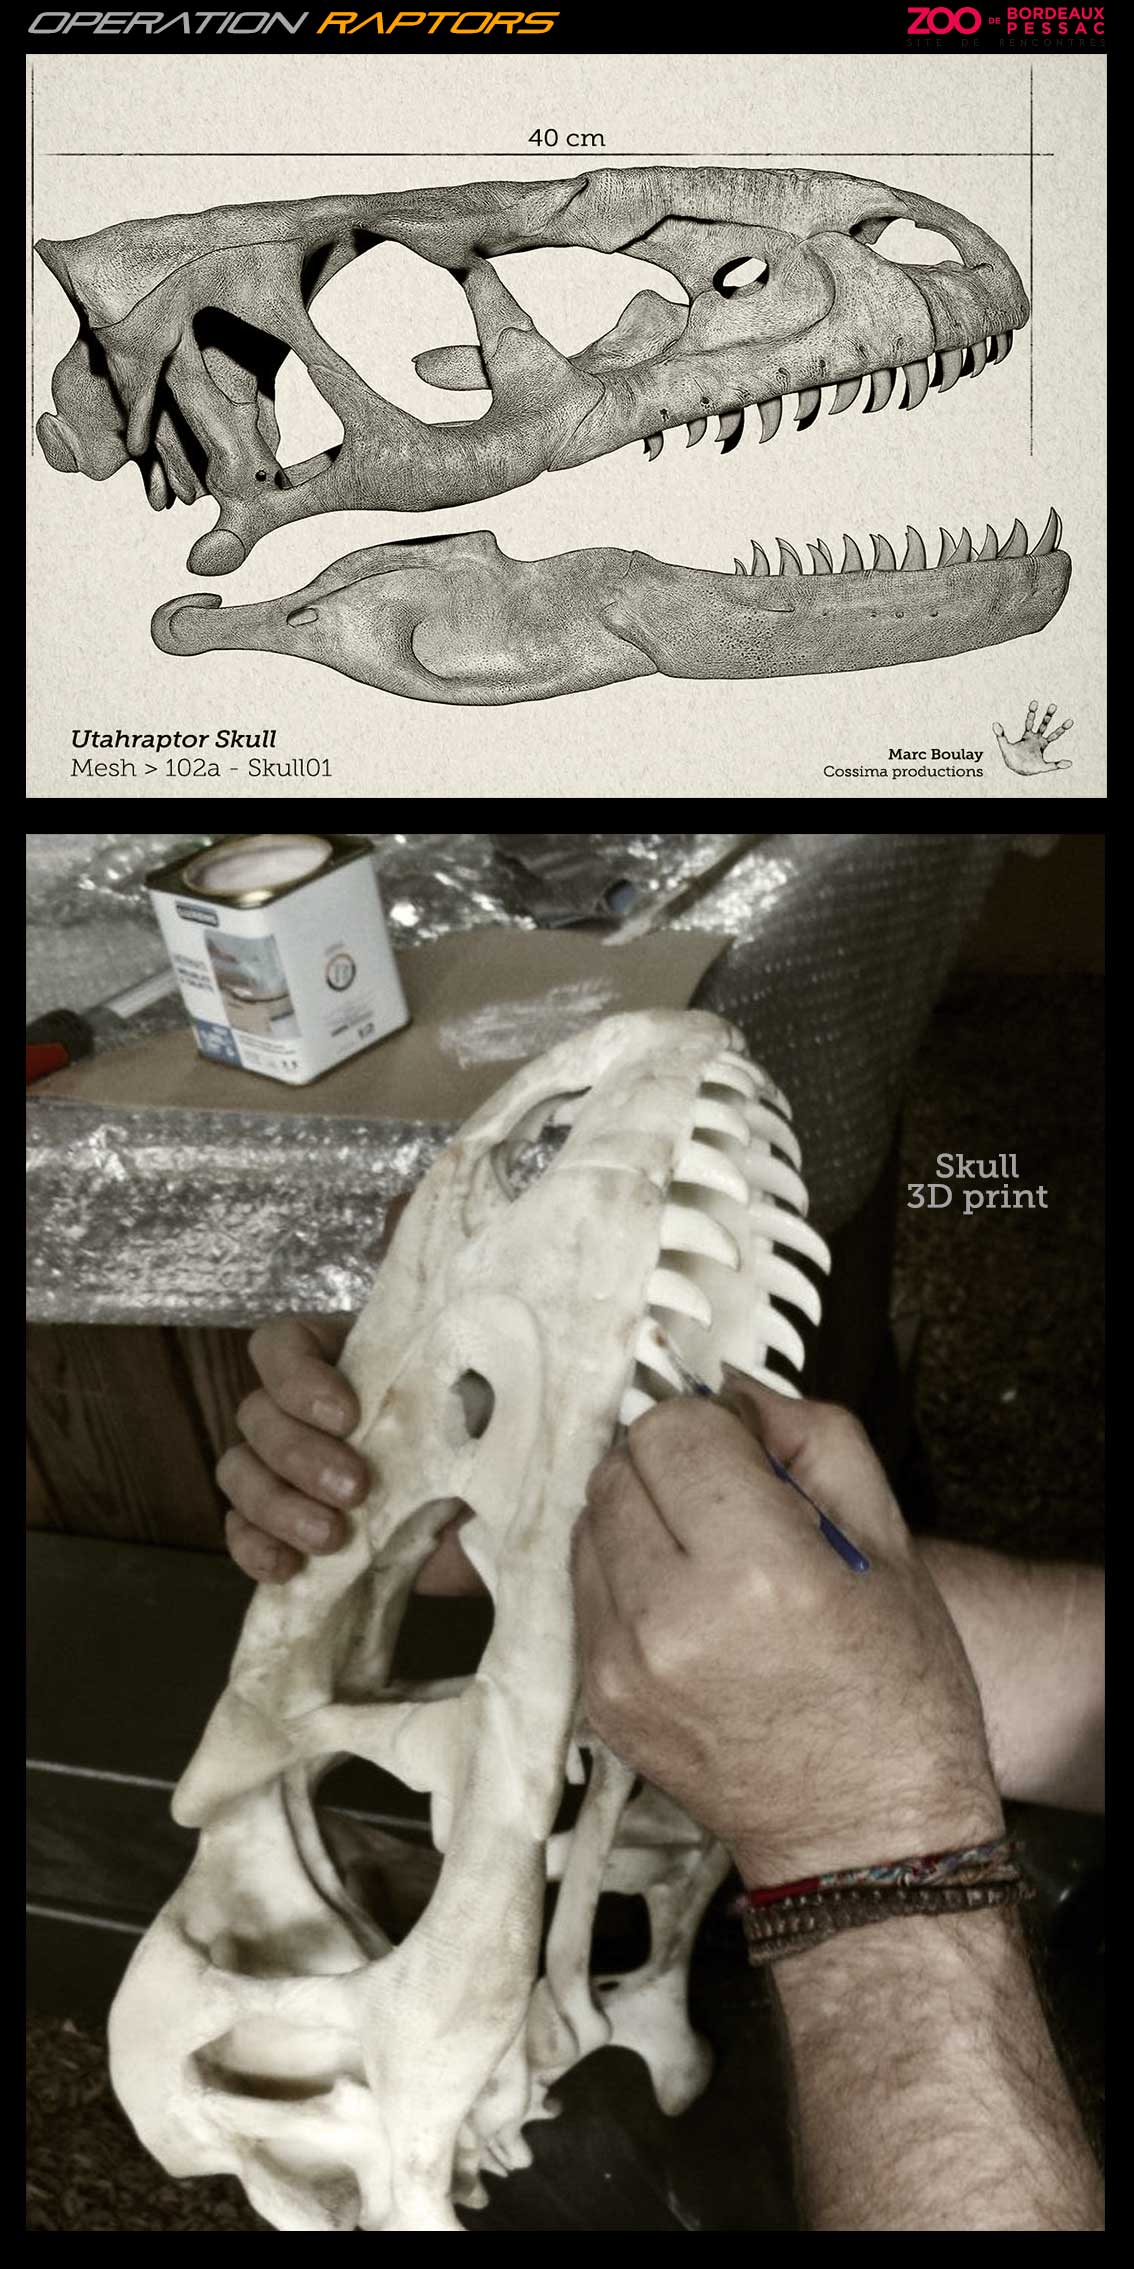 UtahraptorSkull-3Dprint.jpg